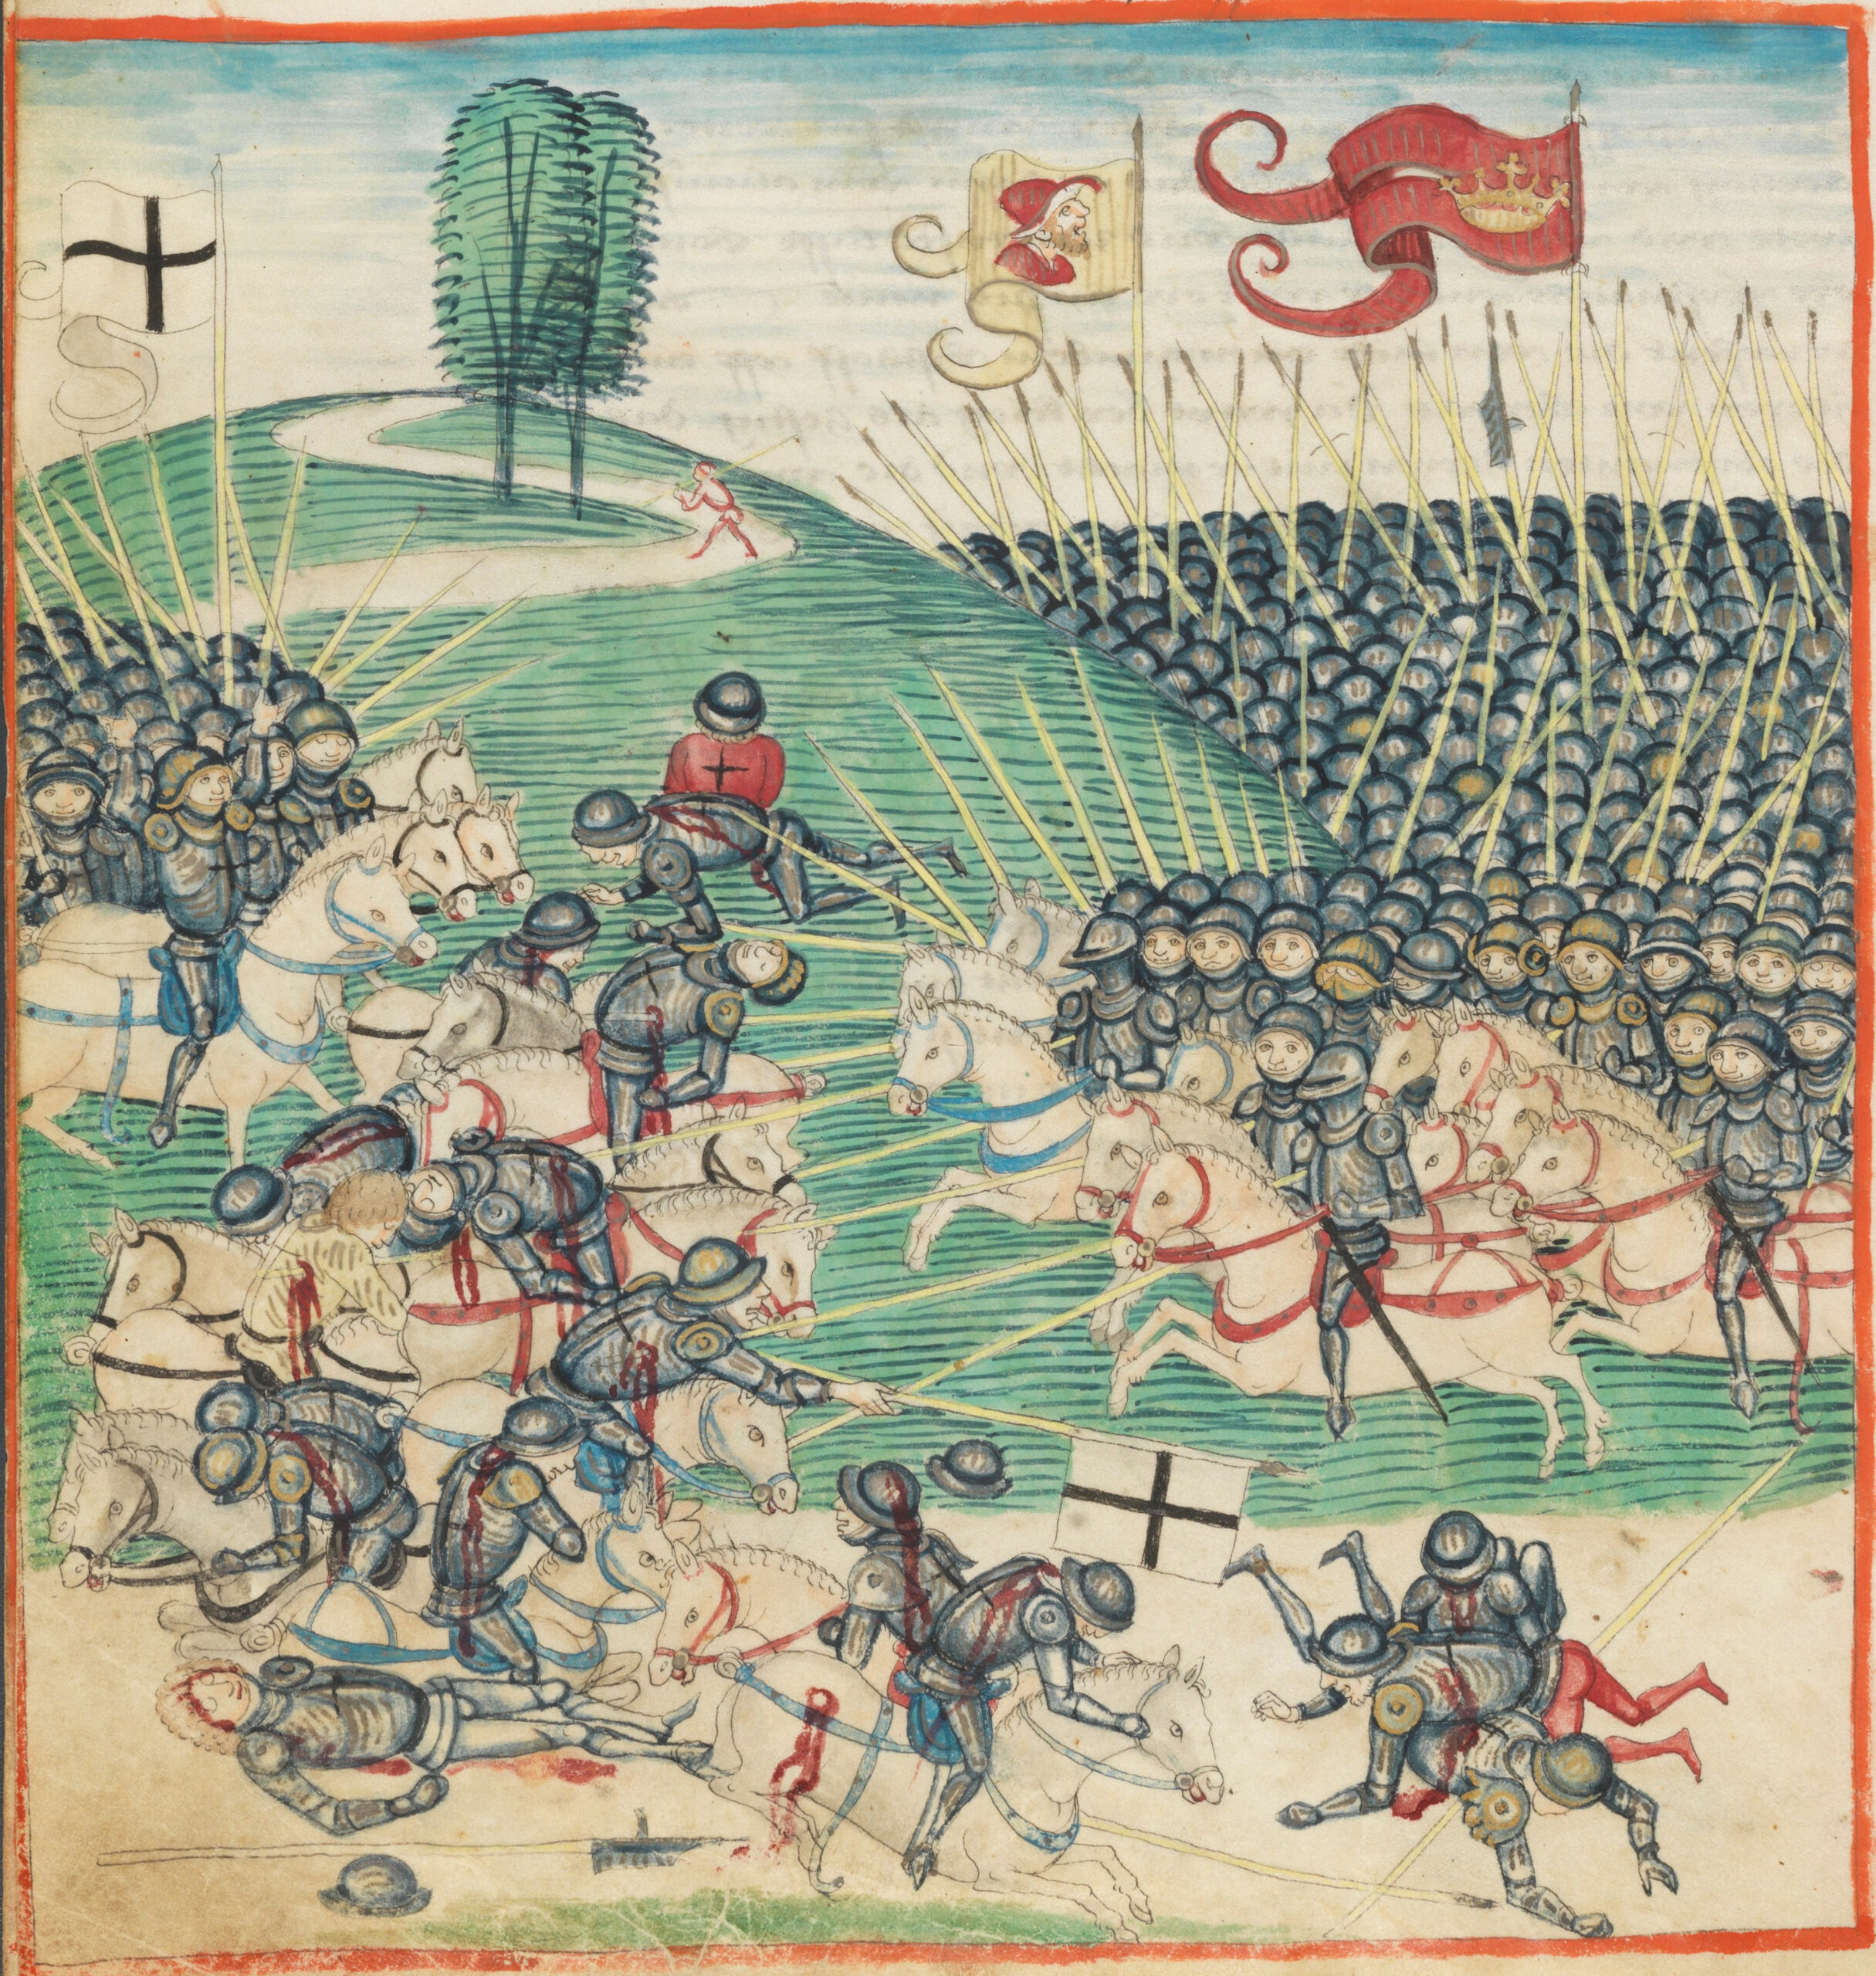 Bitwa pod Grunwaldem na miniaturze kroniki Diebolda Schillinga. Zza zielonego wzgórza wyjeżdżają gęste szeregi polskich rycerzy w jednakowych zbrojach i hełmach oraz z długimi kopiami. Nad nimi powiewa czerwona chorągiew z otwartą koroną. Naprzeciw nich z lewej strony kadru wyjeżdża mniejsza (lub jeszcze niewidoczna w całości) grupa podobnych rycerzy pod chorągwią z czarnym krzyżem na białym tle. W środku kadru u stóp wzgórza ścierają się pierwsze szeregi rycerzy.